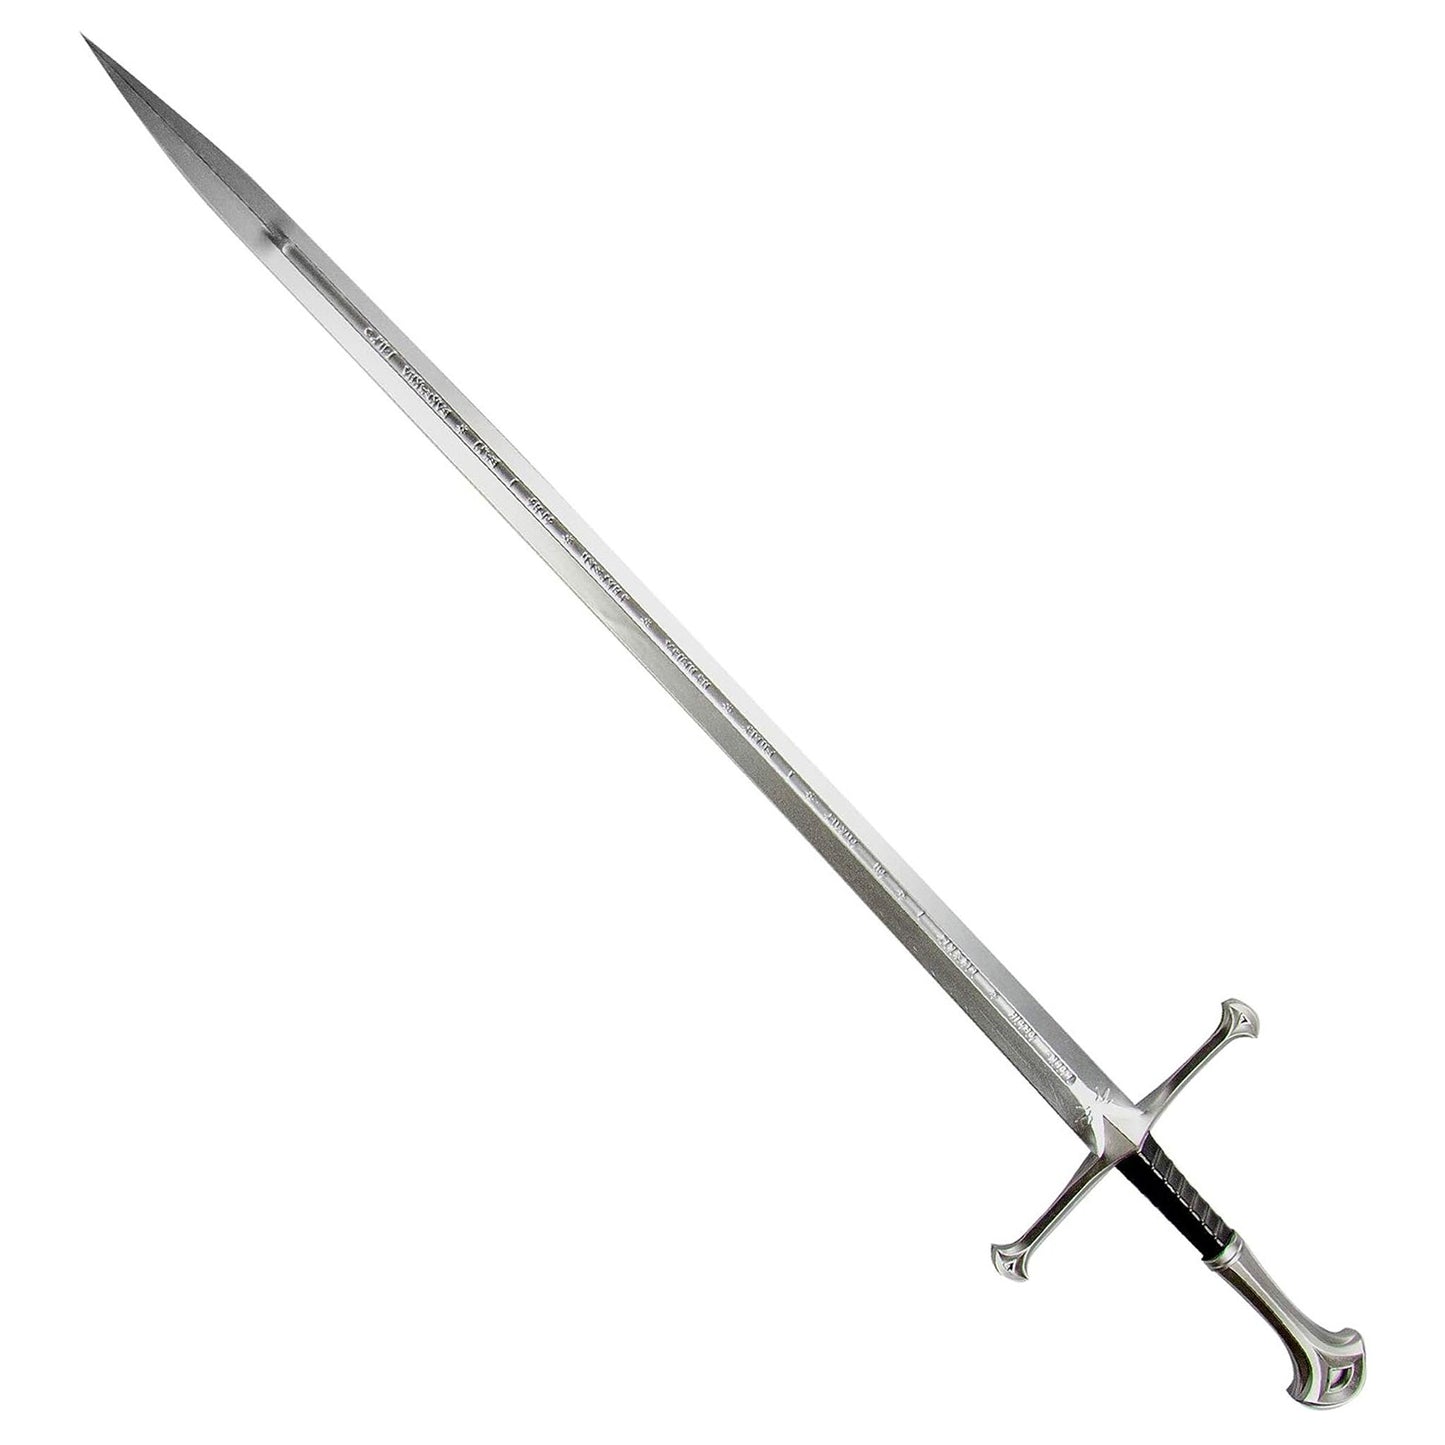 Anduril (Lord of the Rings) Sword of Aragorn Foam Prop Replica